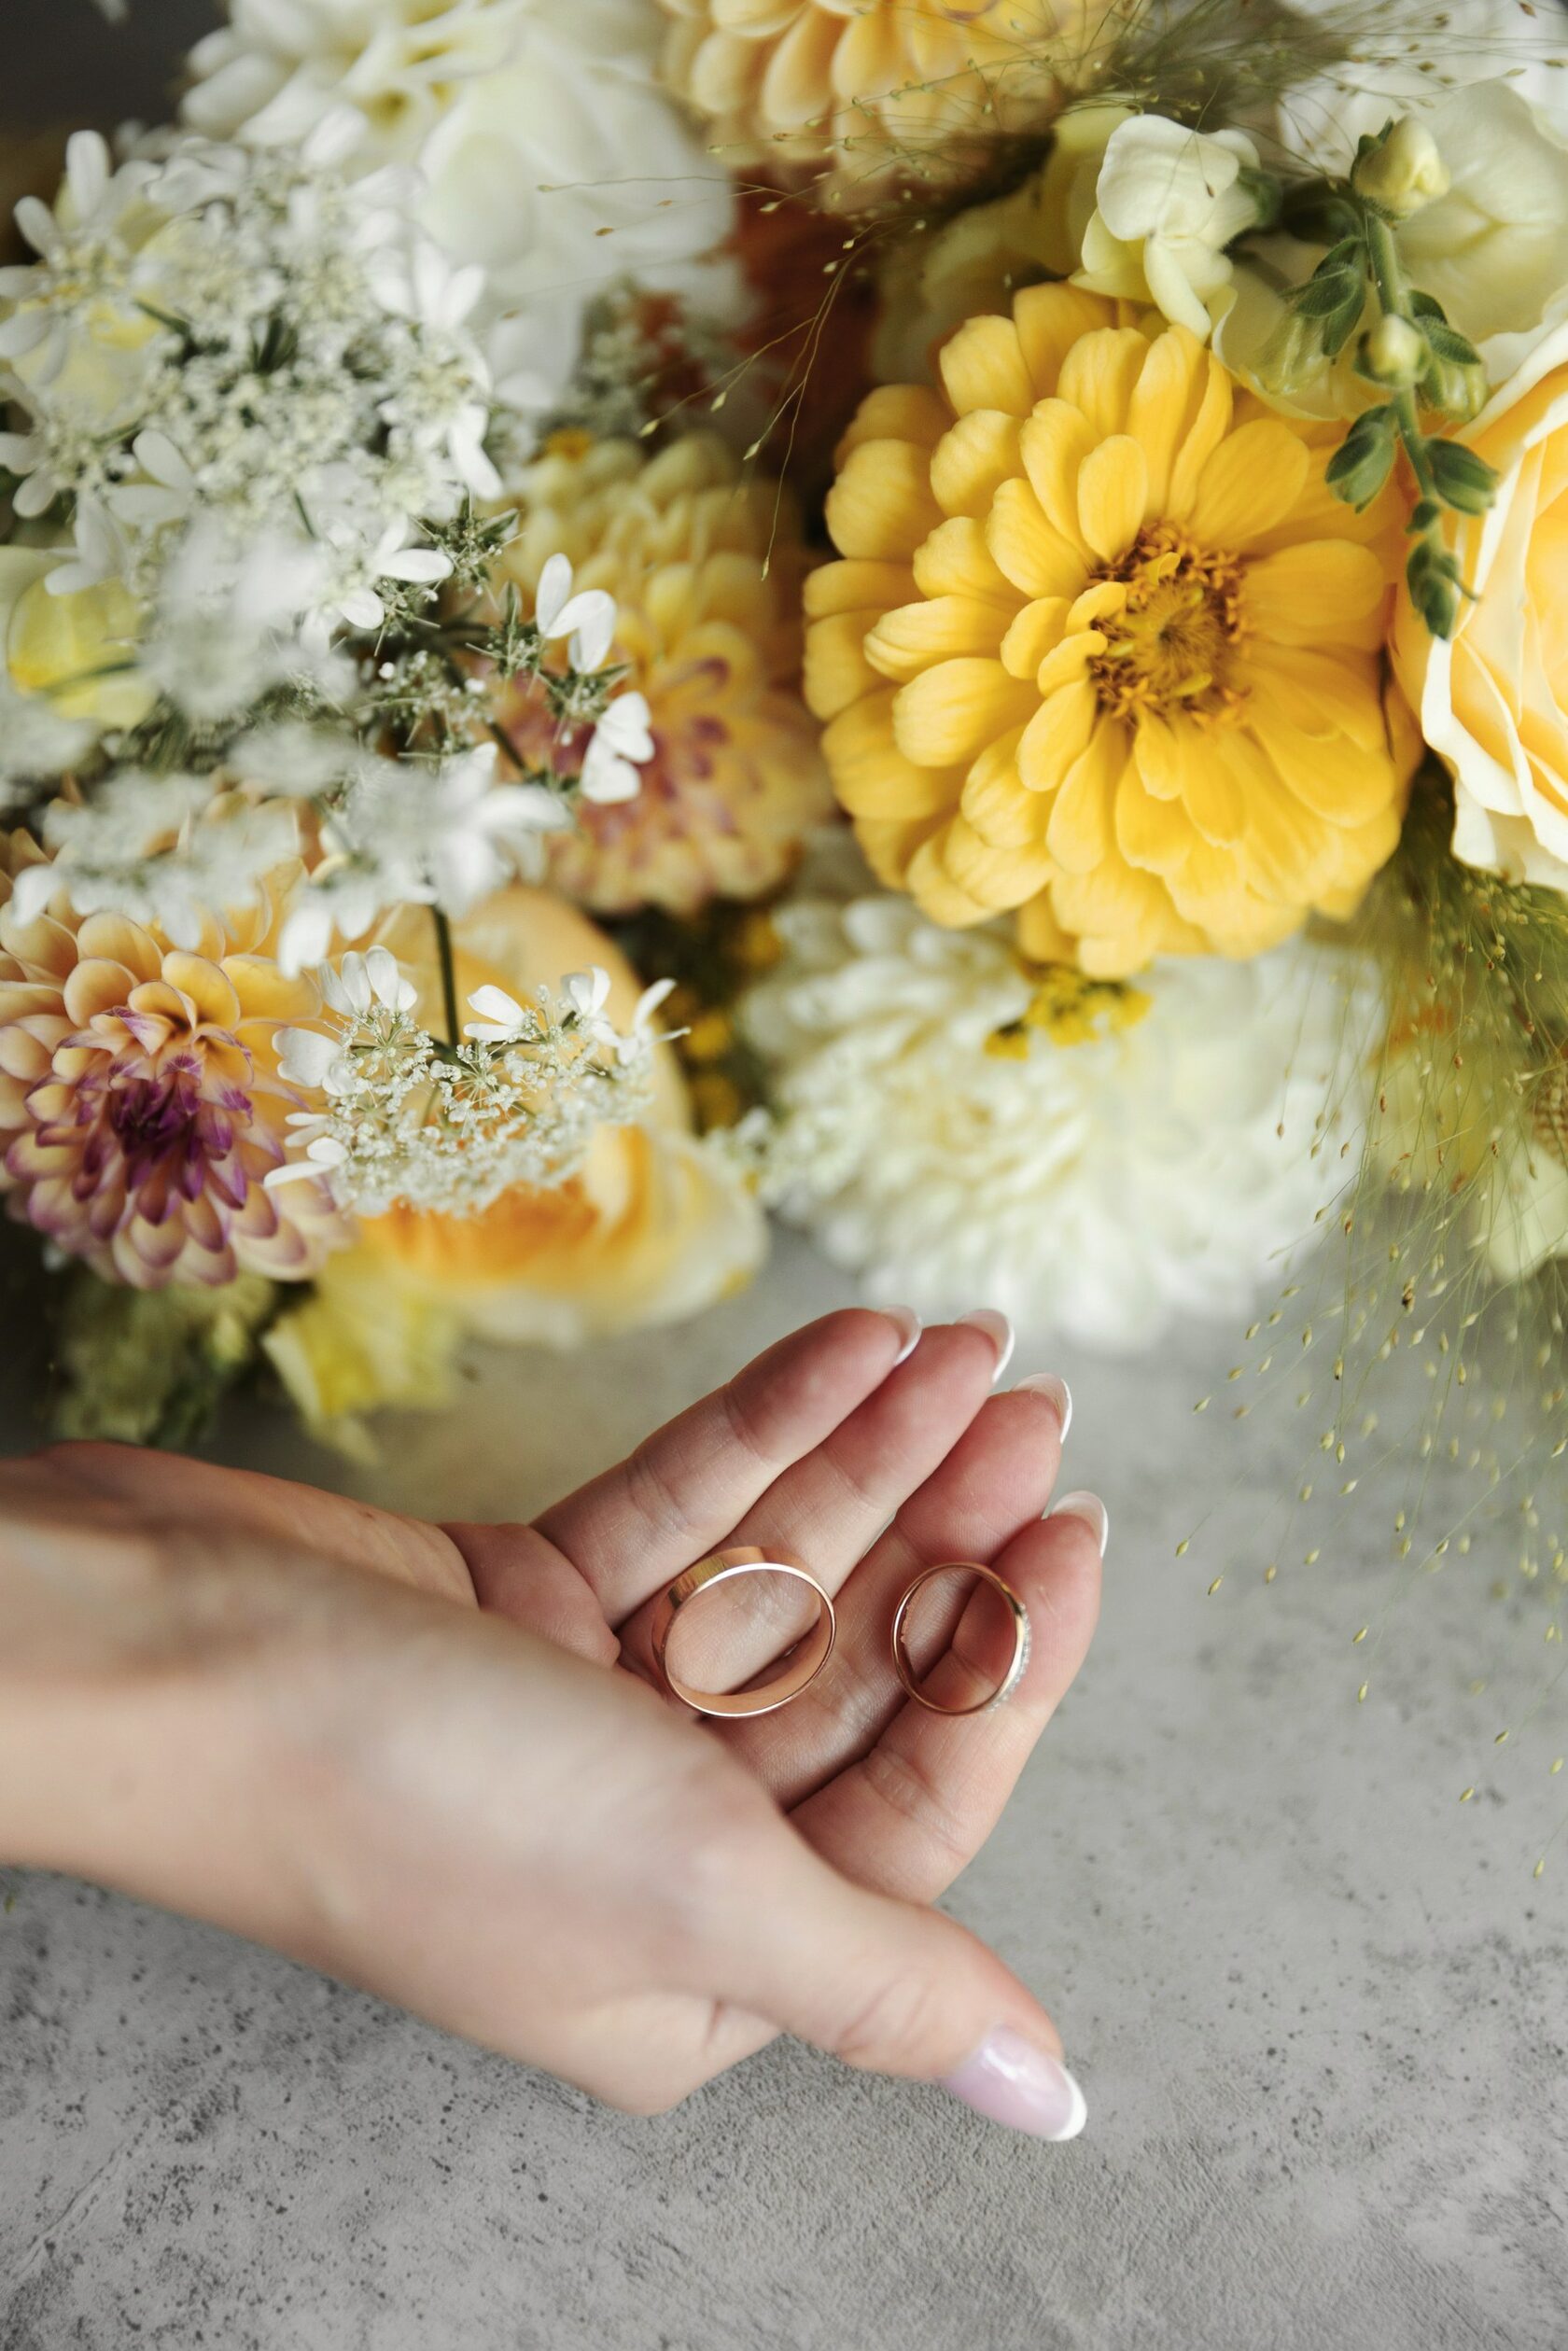 Предложение руки и сердца: правильные идеи сделать девушке предложение выйти замуж